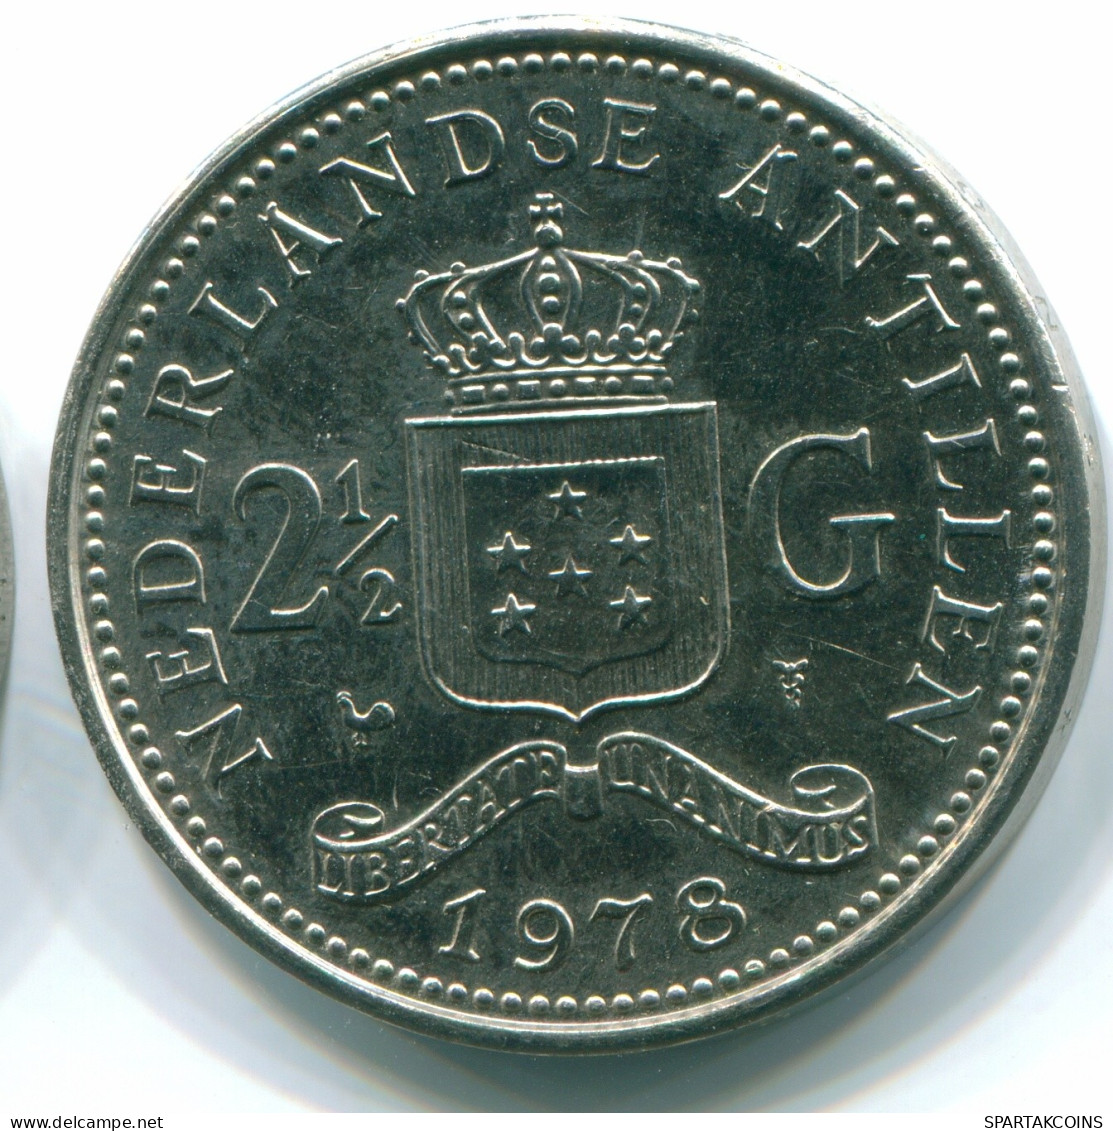 1 GULDEN 1978 ANTILLAS NEERLANDESAS Nickel Colonial Moneda #S12064.E.A - Nederlandse Antillen